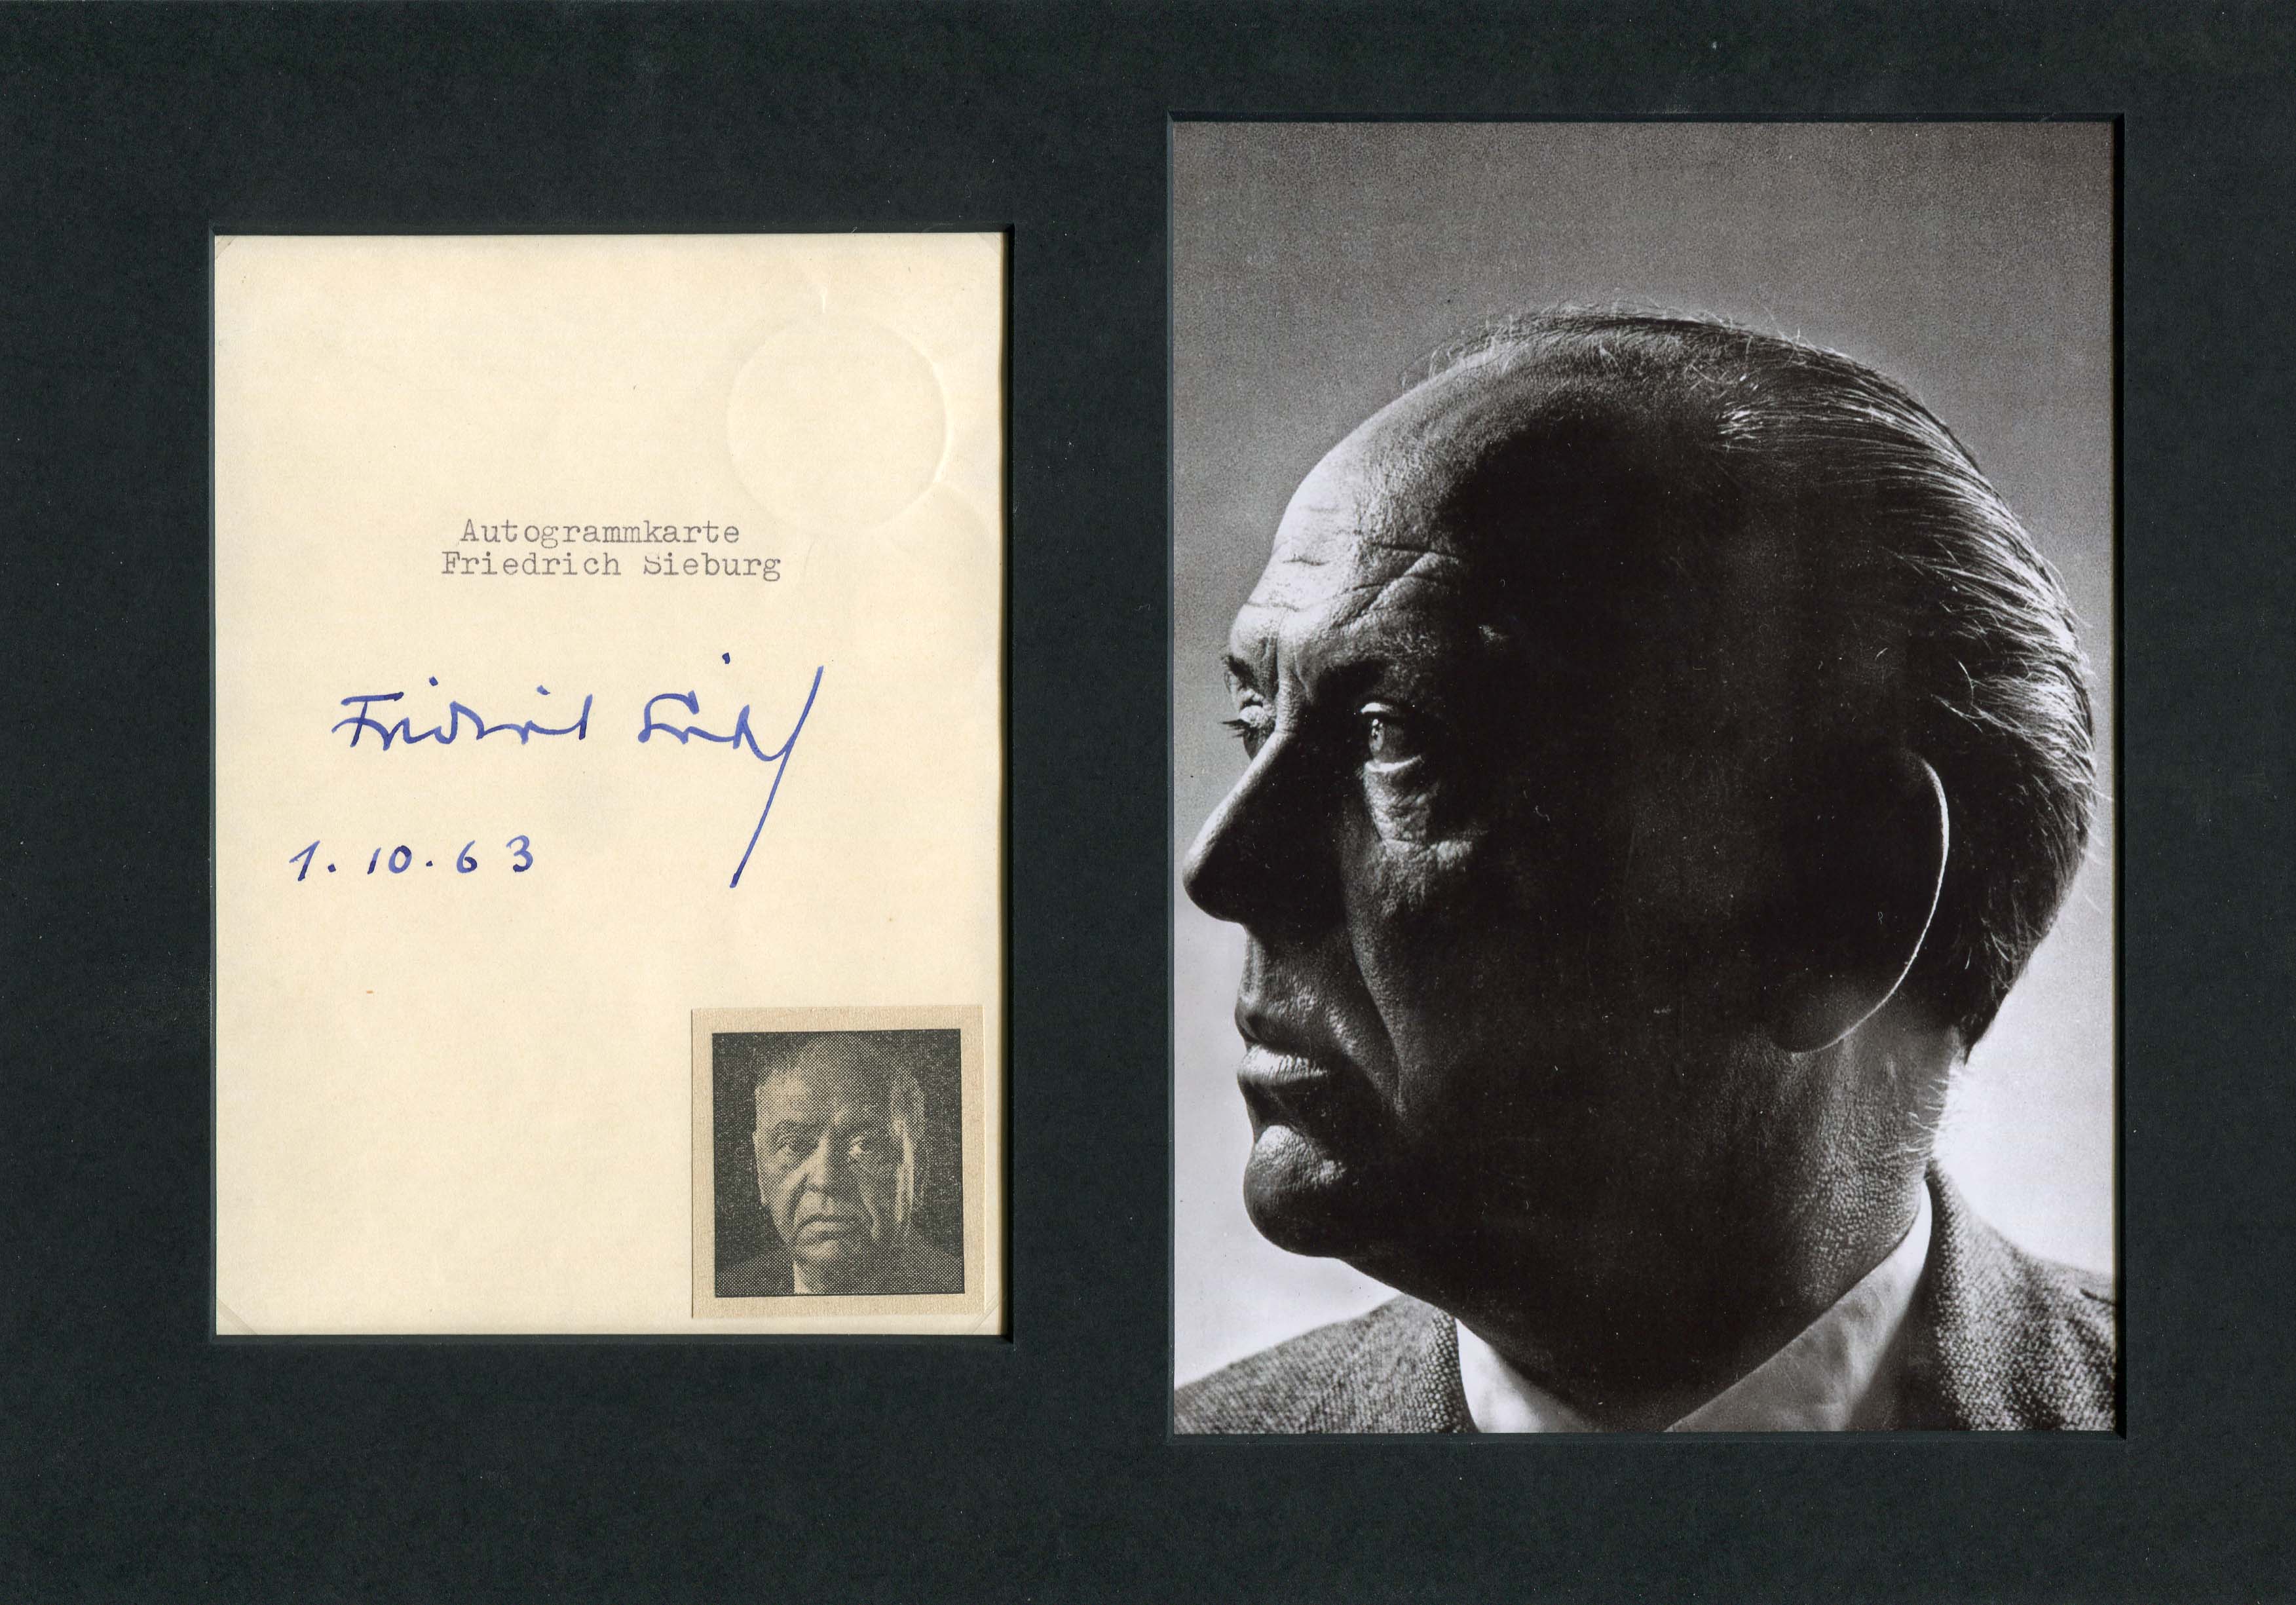 Sieburg, Friedrich autograph